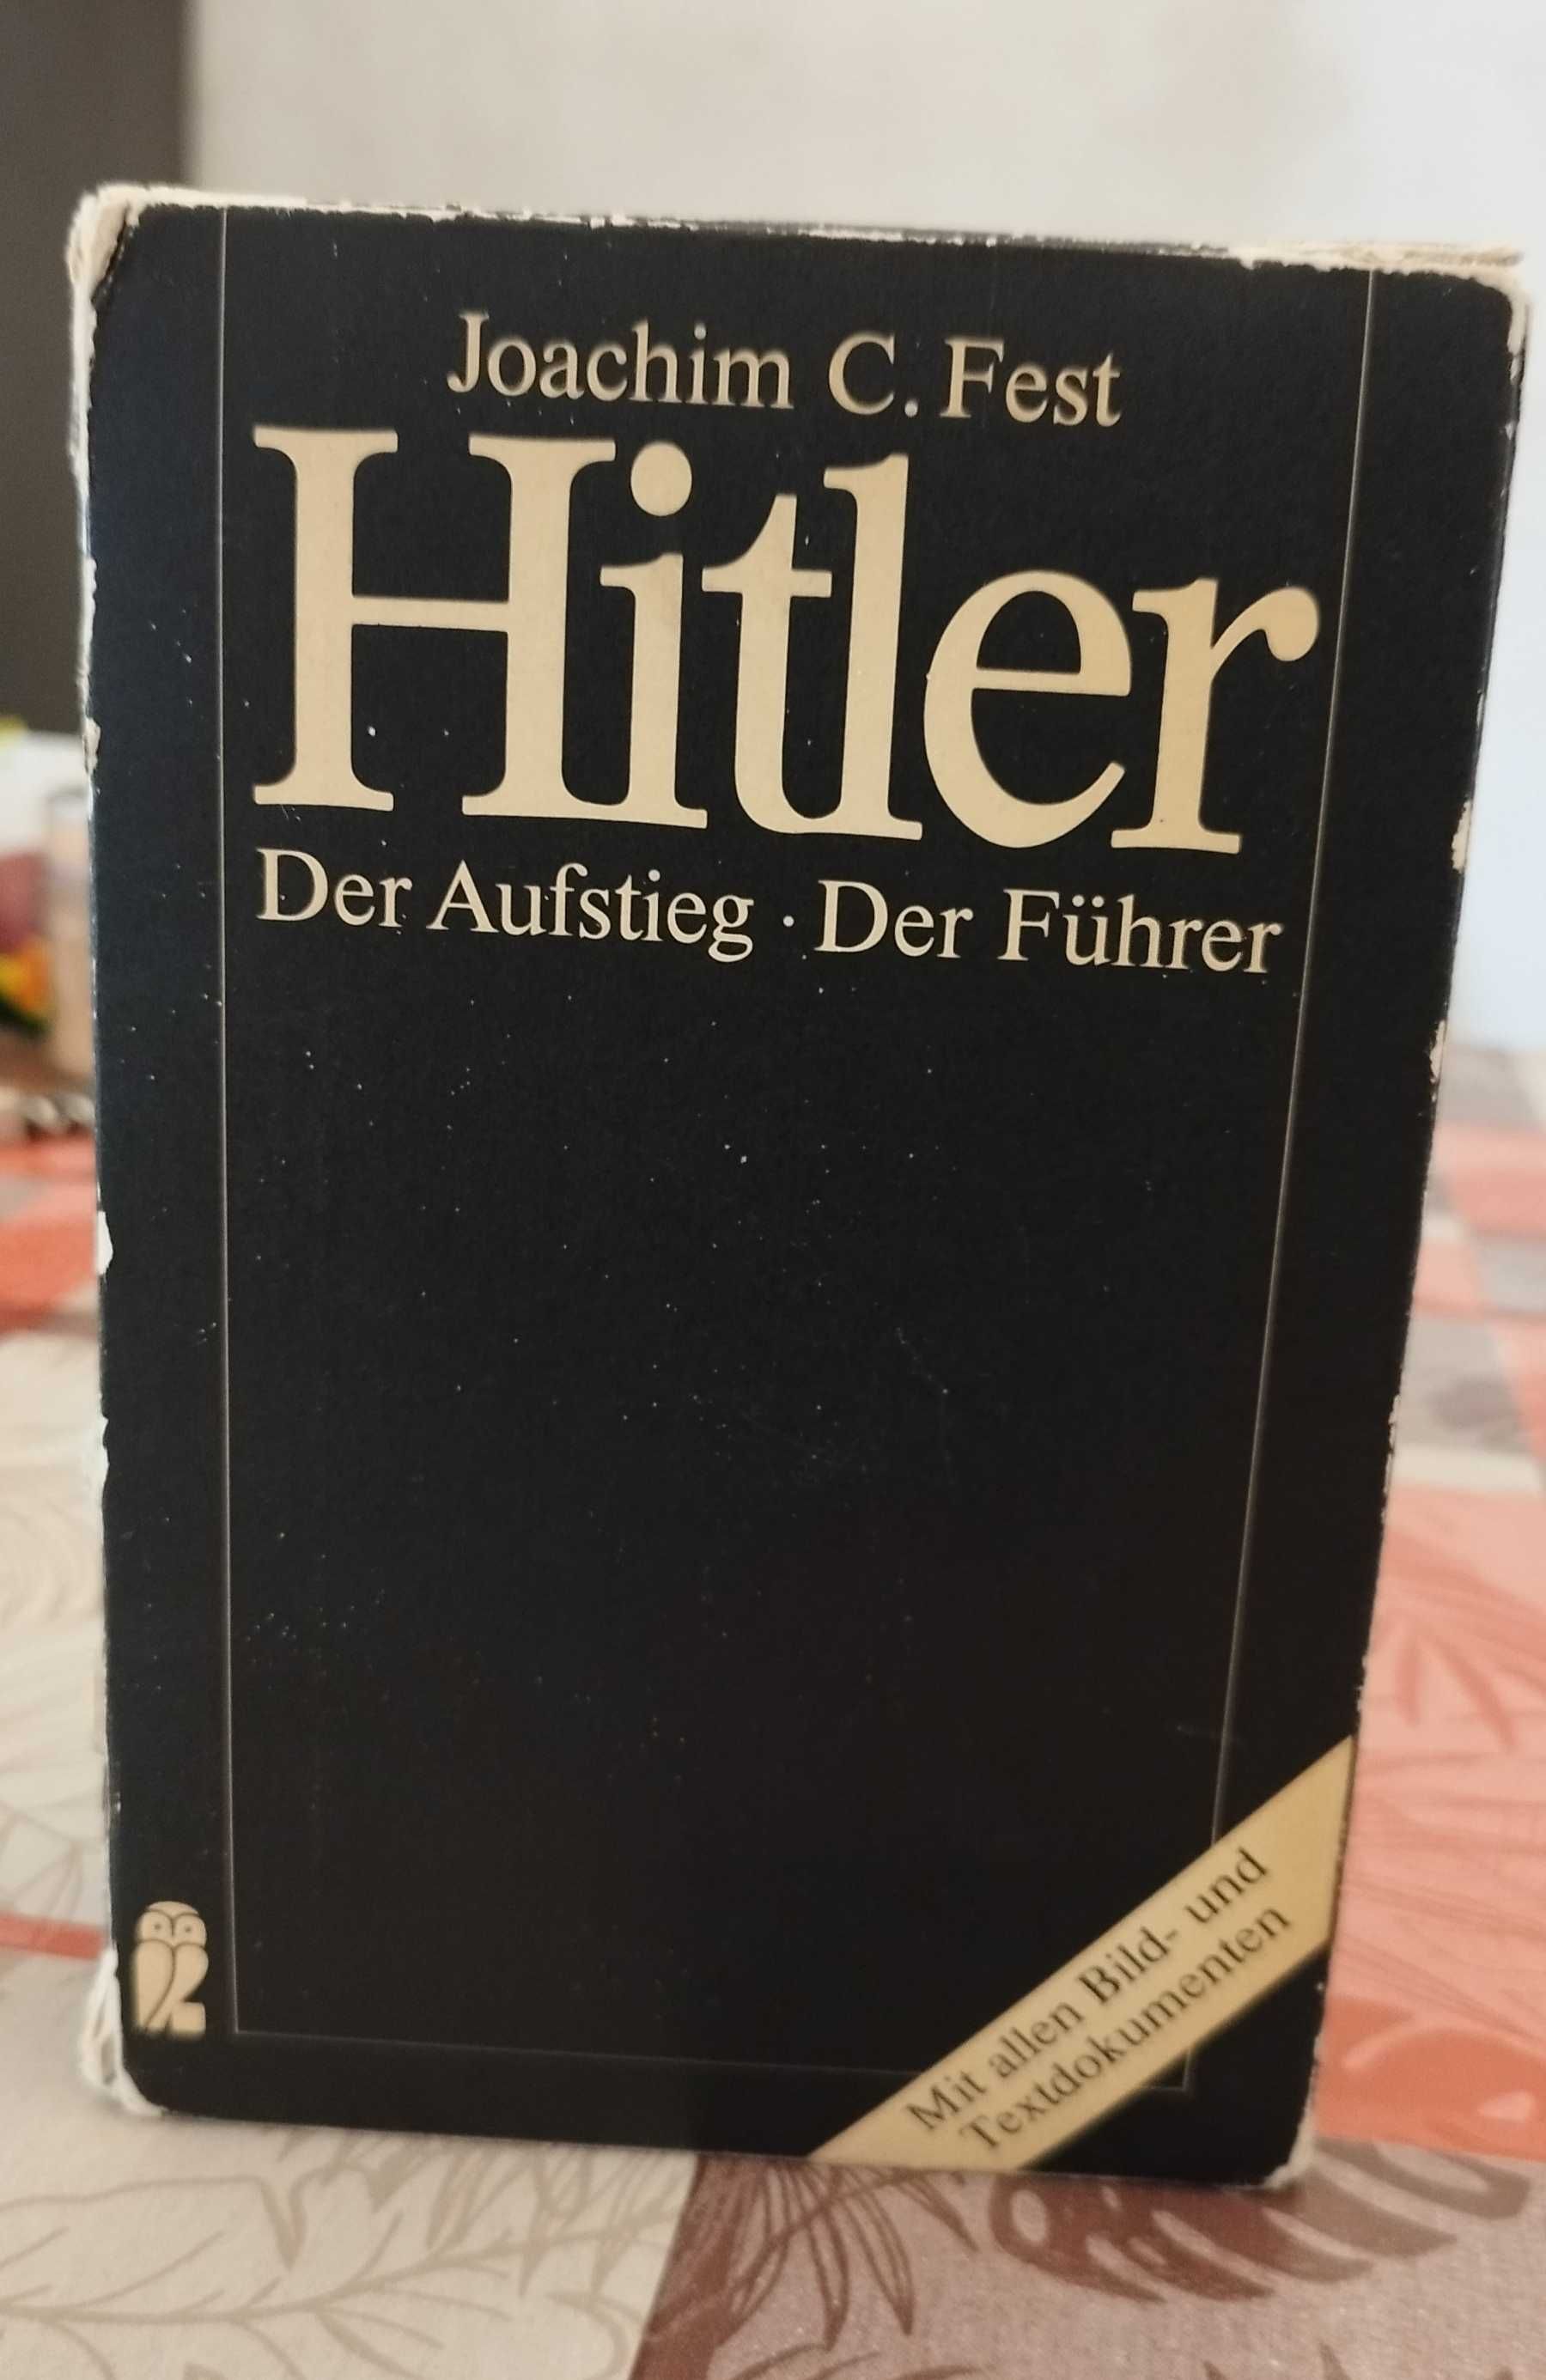 Hitler Der Aufstieg - Der Führer - Joachim C. Fest